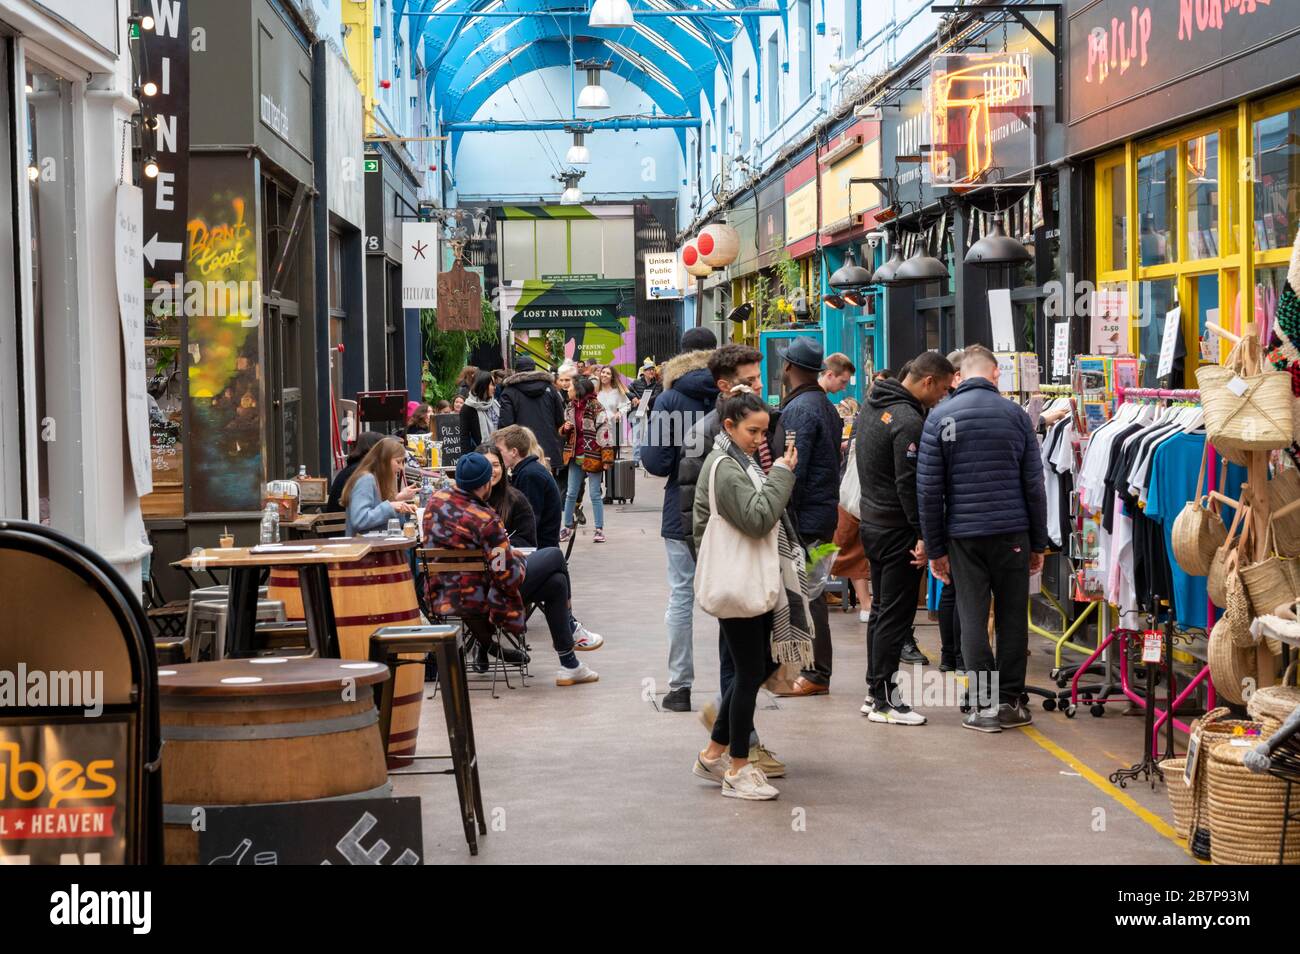 À l'intérieur du marché de Brixton Village avec des boutiques indépendantes, des restaurants et des étals. Banque D'Images